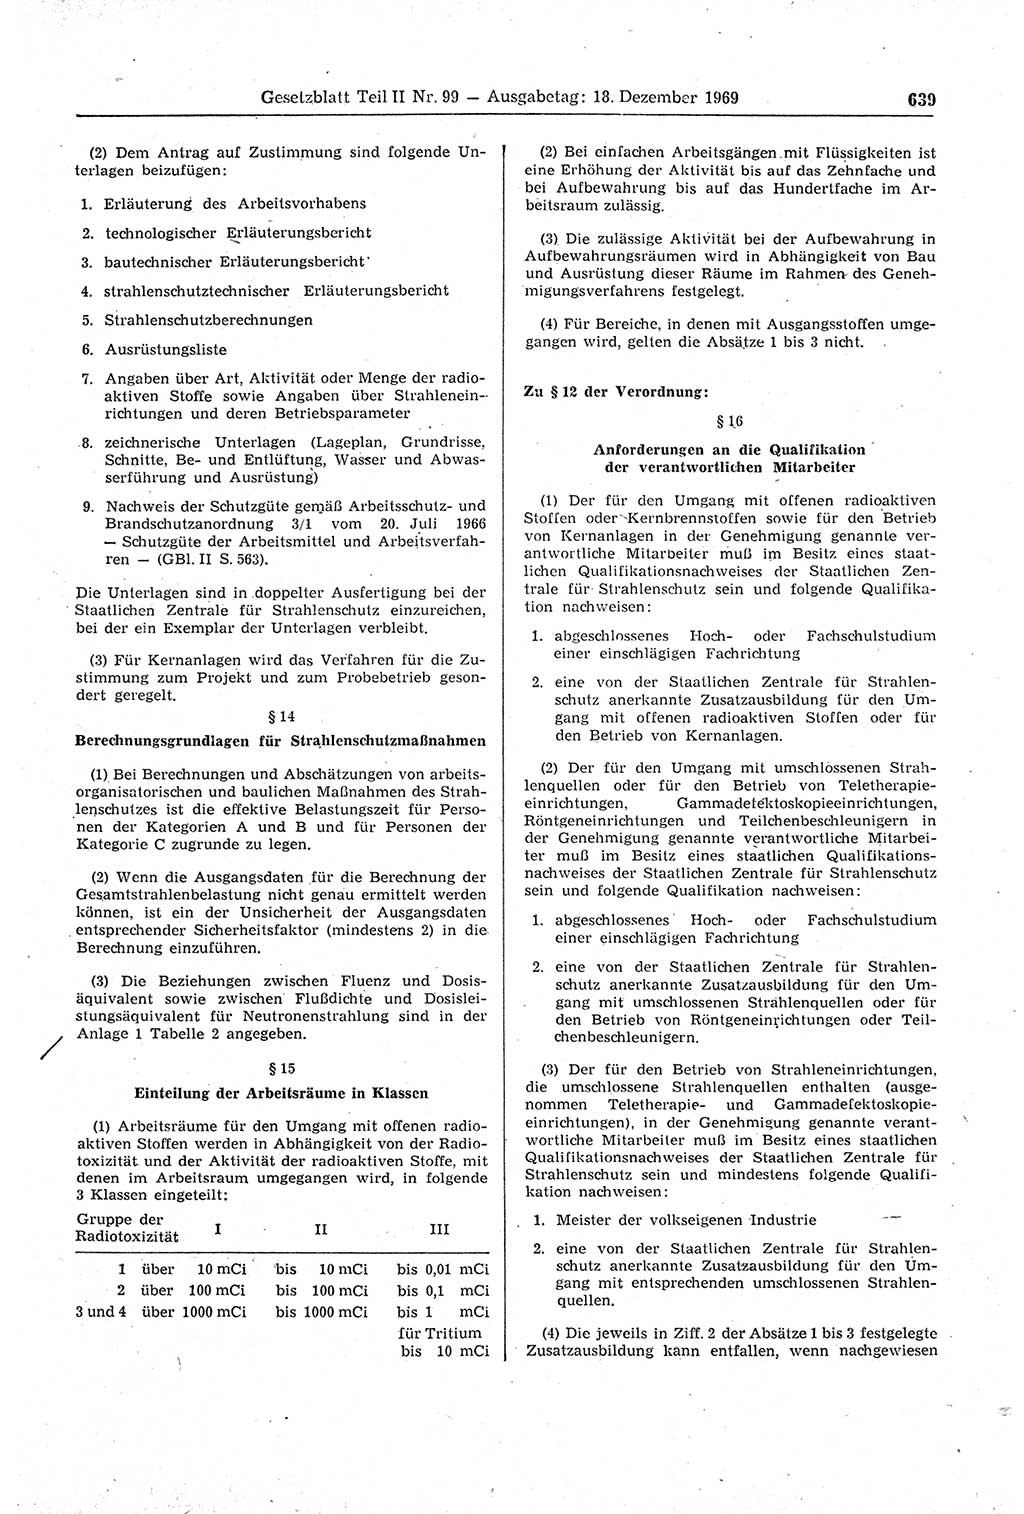 Gesetzblatt (GBl.) der Deutschen Demokratischen Republik (DDR) Teil ⅠⅠ 1969, Seite 639 (GBl. DDR ⅠⅠ 1969, S. 639)